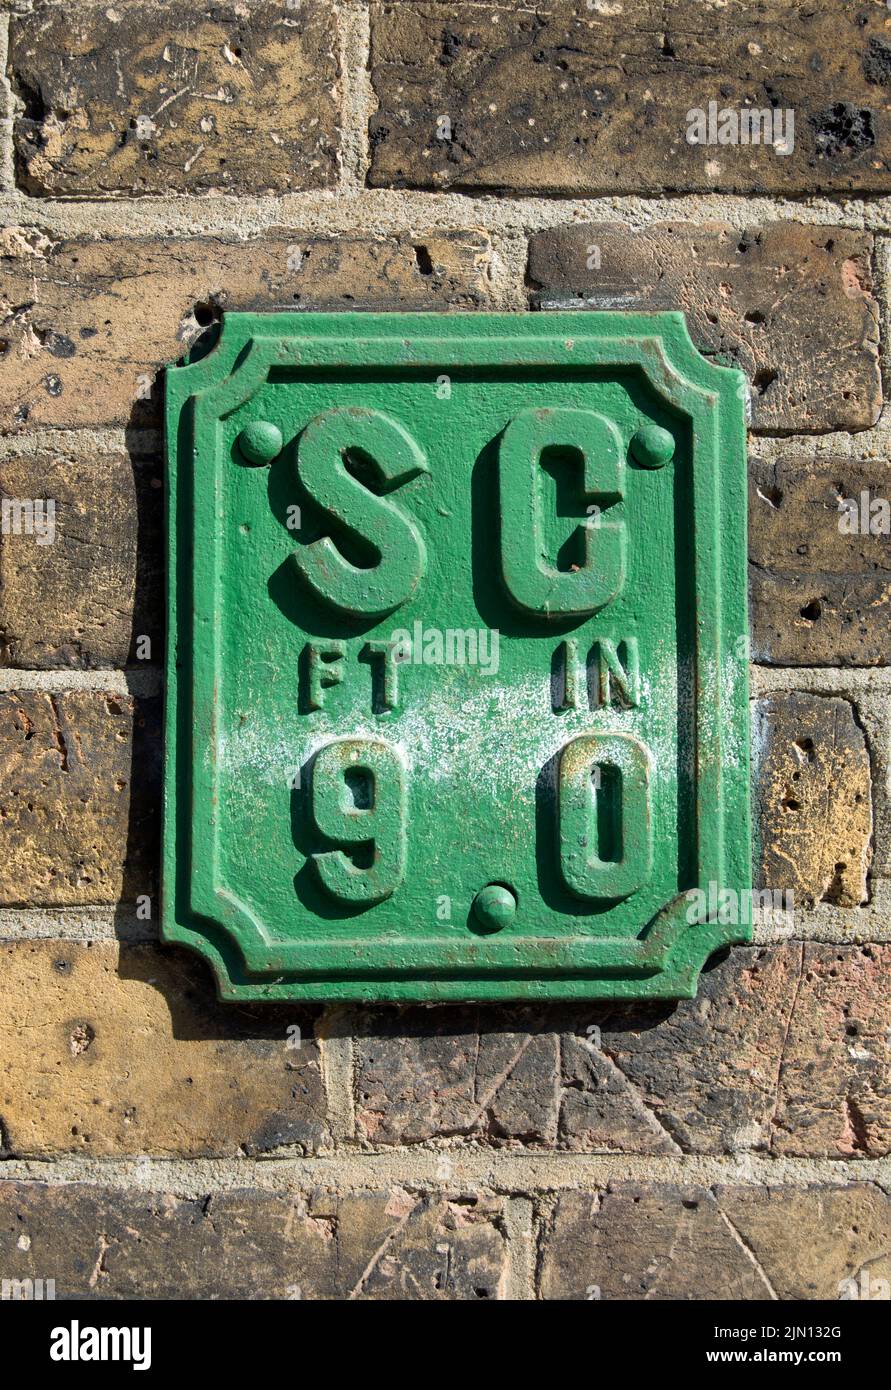 cartello da parete inglese che indica la posizione di un rubinetto, per il controllo dell'acqua di rete, a una distanza di 9 piedi, a brentford, londra, inghilterra Foto Stock